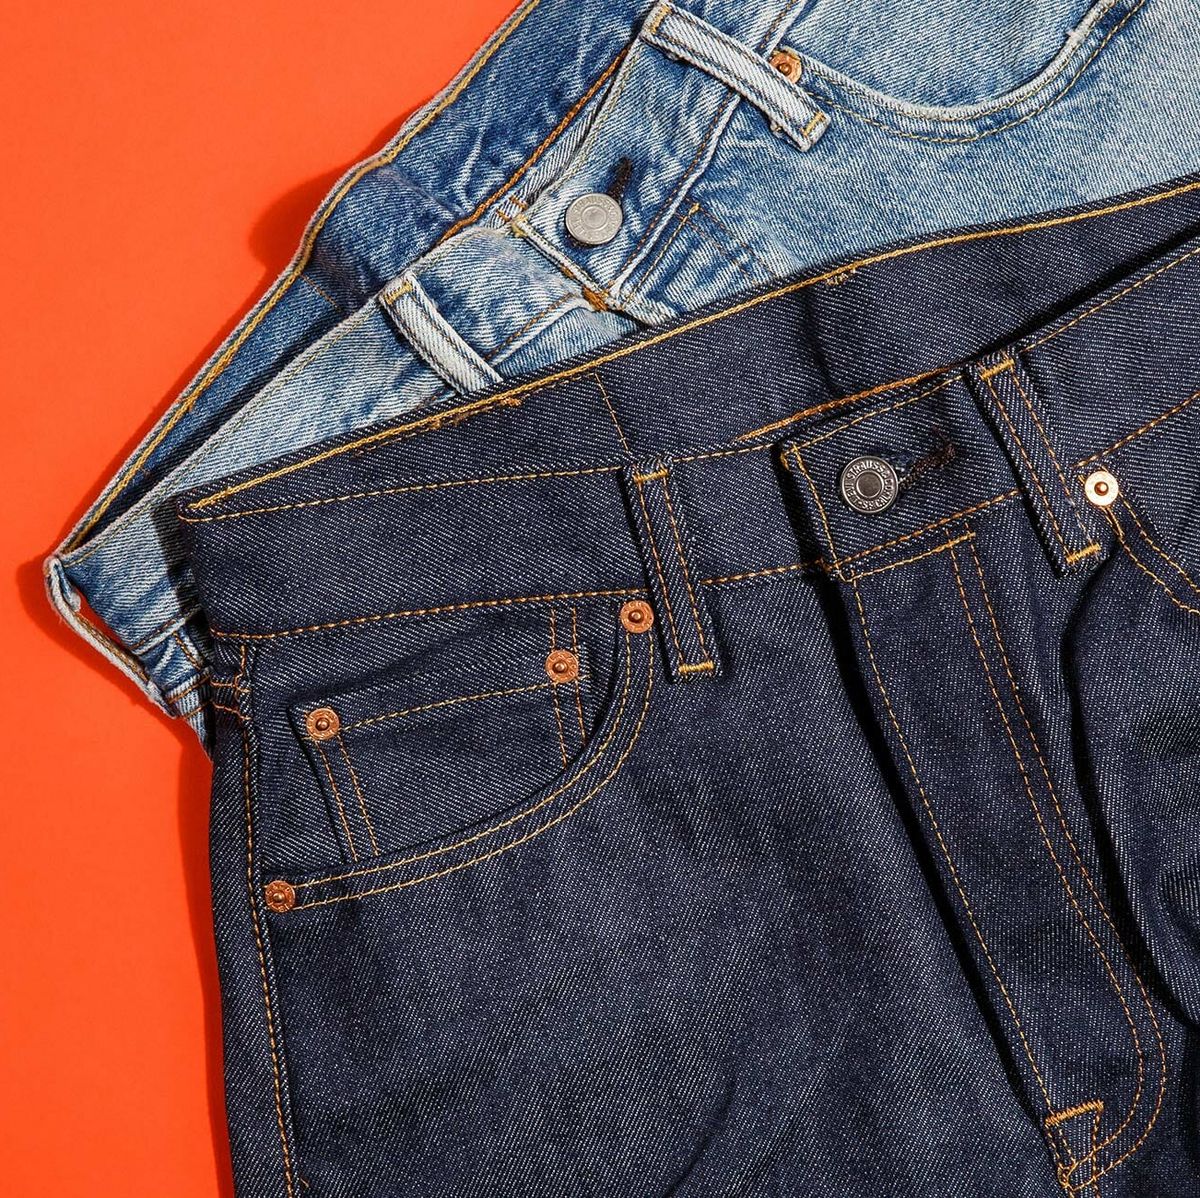 Kør væk masse Ren og skær Levi's 501 Review: Is the Original Blue Jean Any Good?